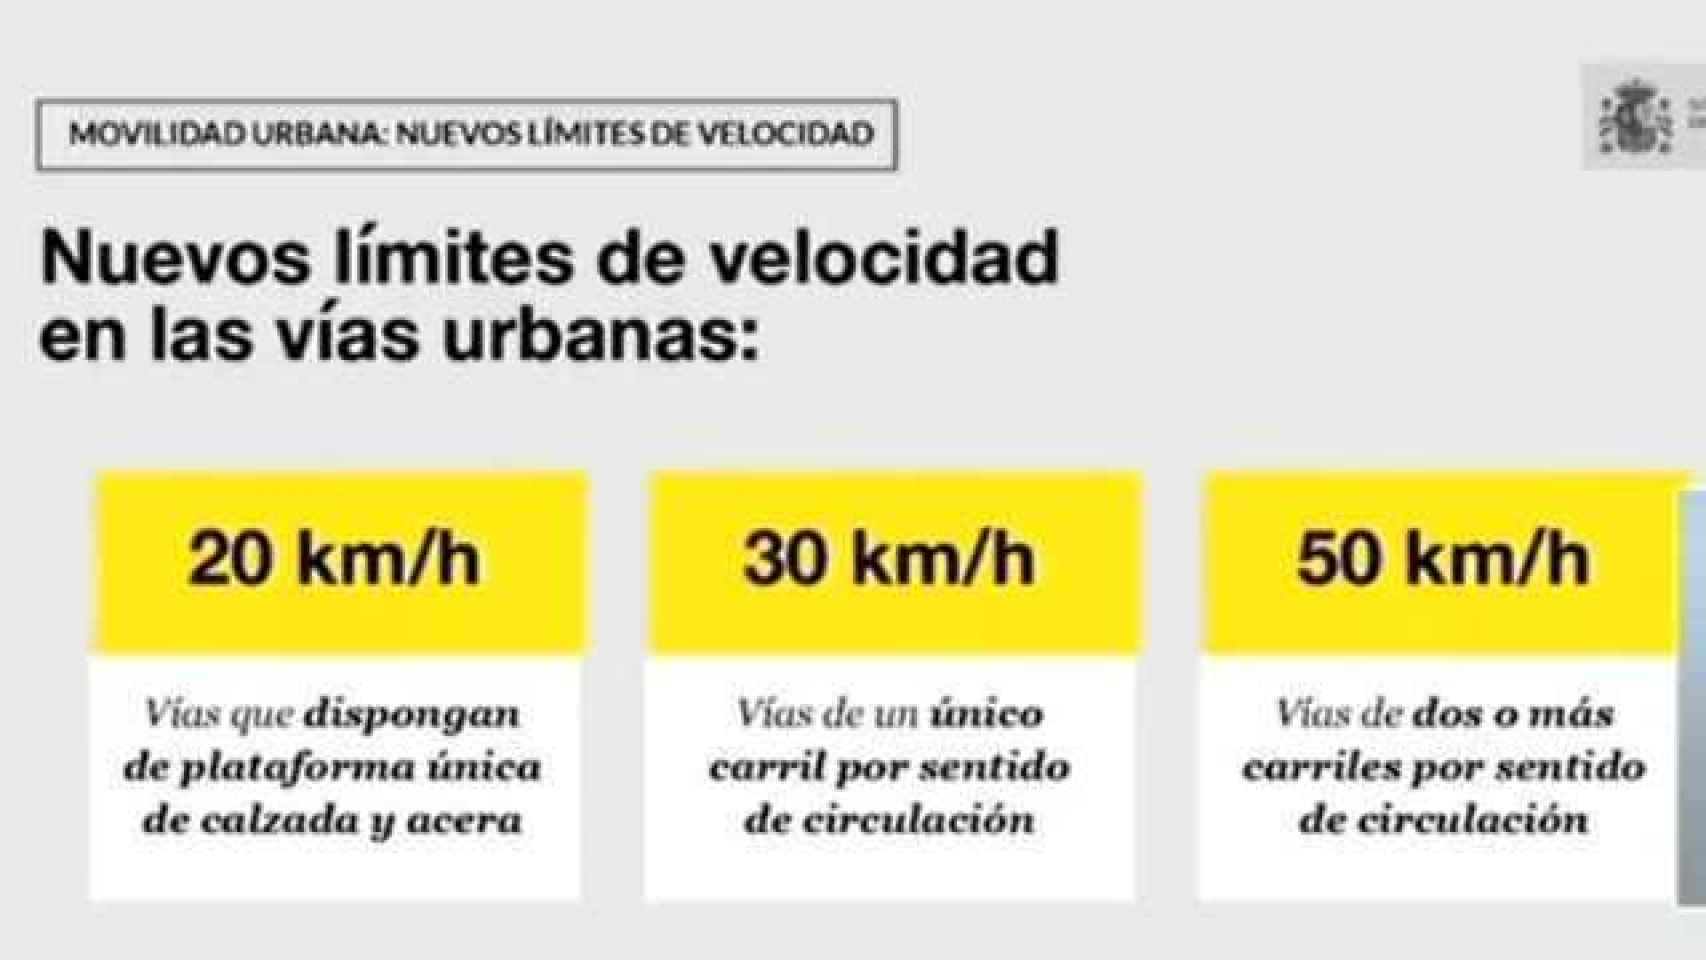 Diapositiva explicativa que ha ofrecido el Gobierno sobre los nuevos límites de velocidad.